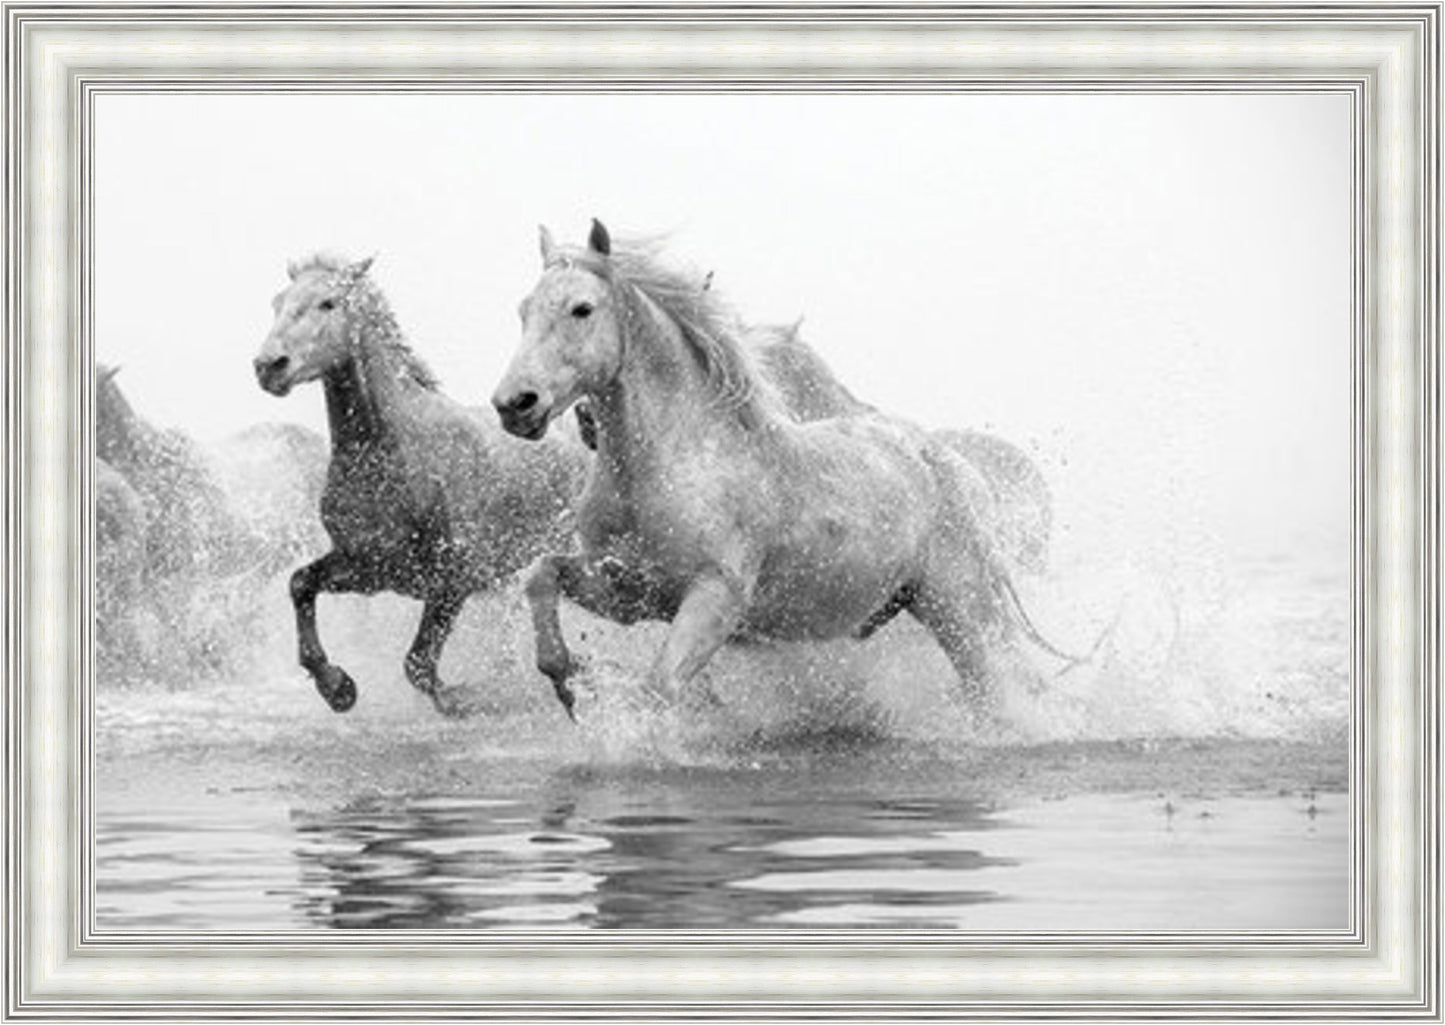 White Horses - Slim Frame